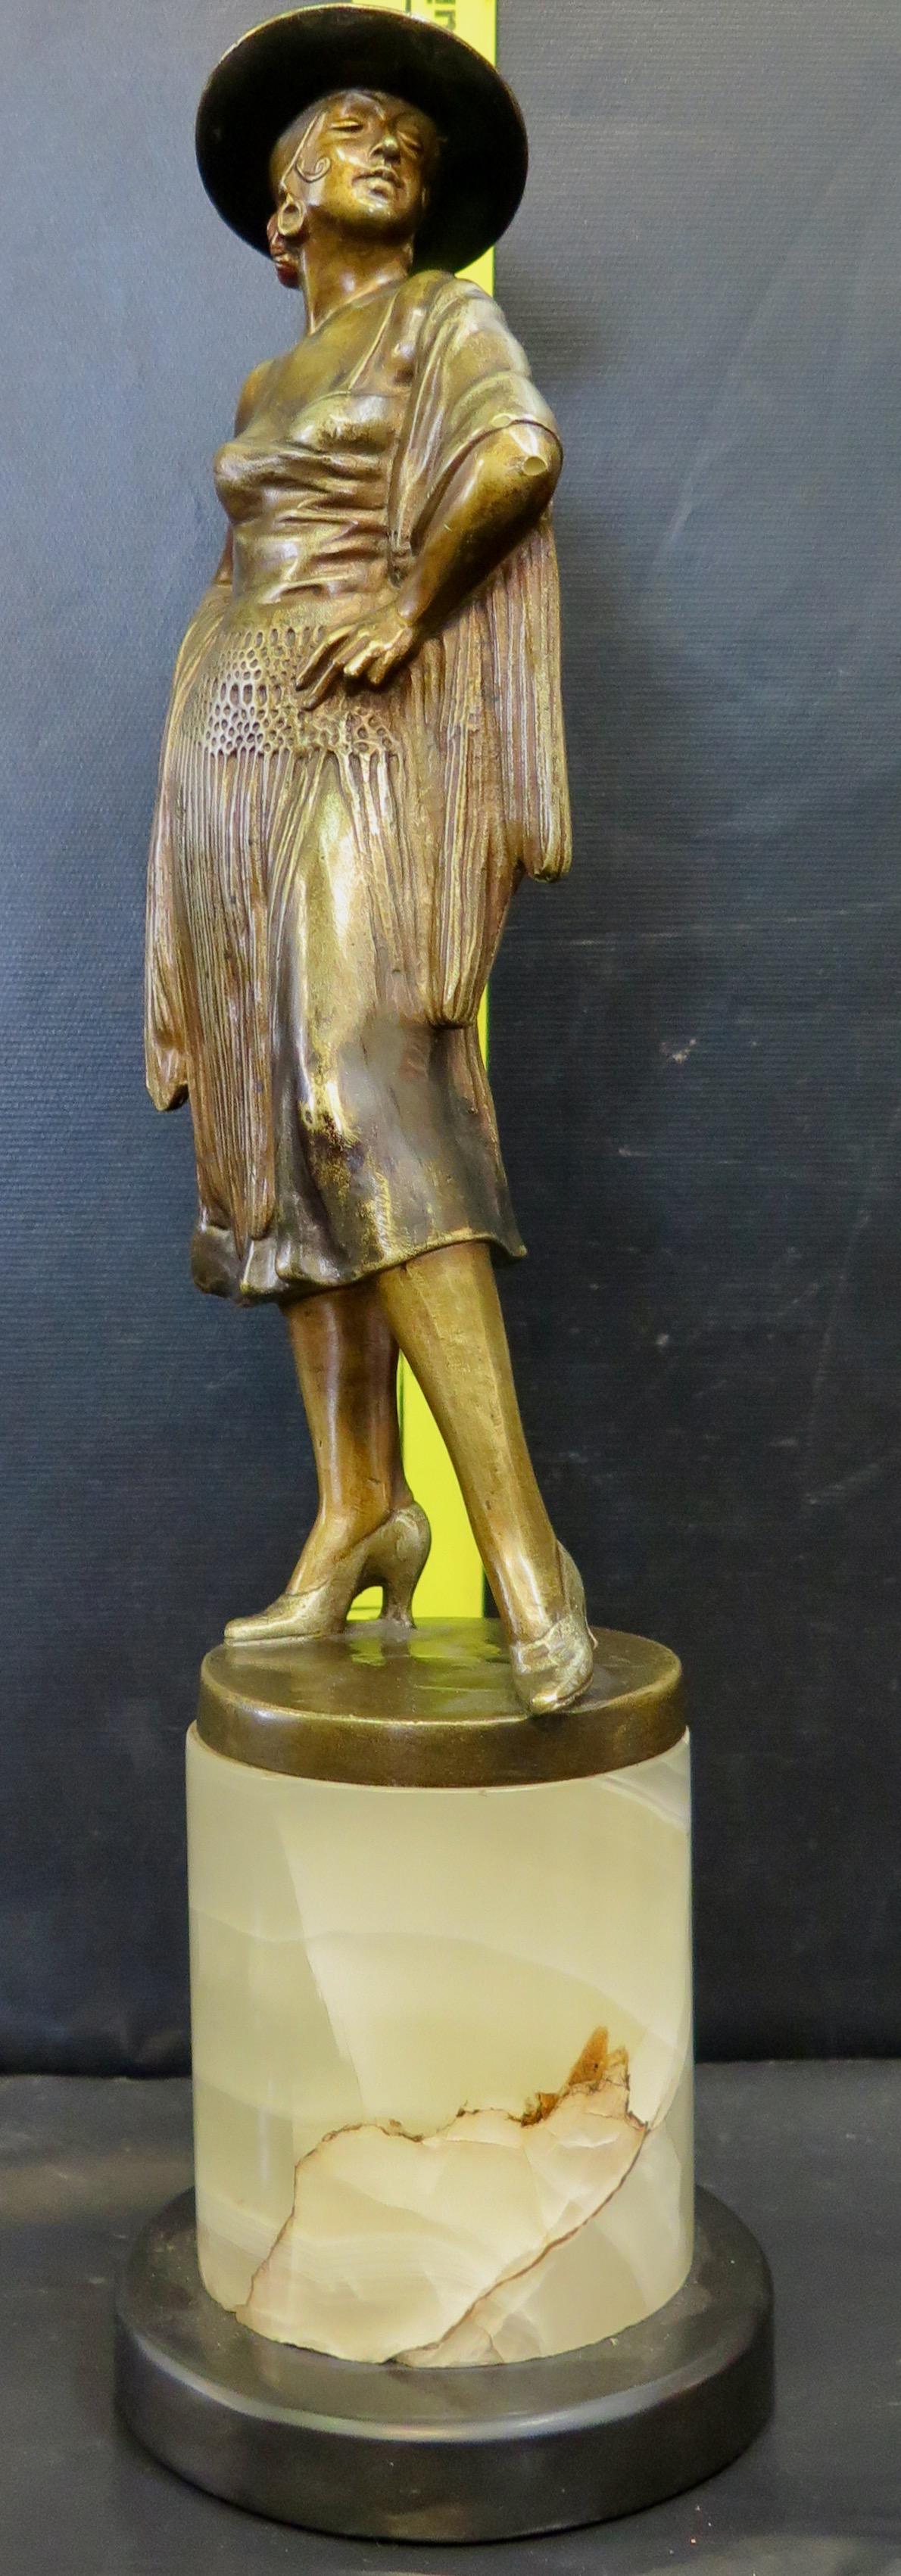 Une étonnante sculpture vintage en bronze patiné Art of Vintage. Il s'agit d'une statue d'une danseuse de flamenco magnifiquement costumée et détaillée, qui contient quelques éléments peints à froid. Le bronze est l'œuvre de Bruno Zach (alias K.K.